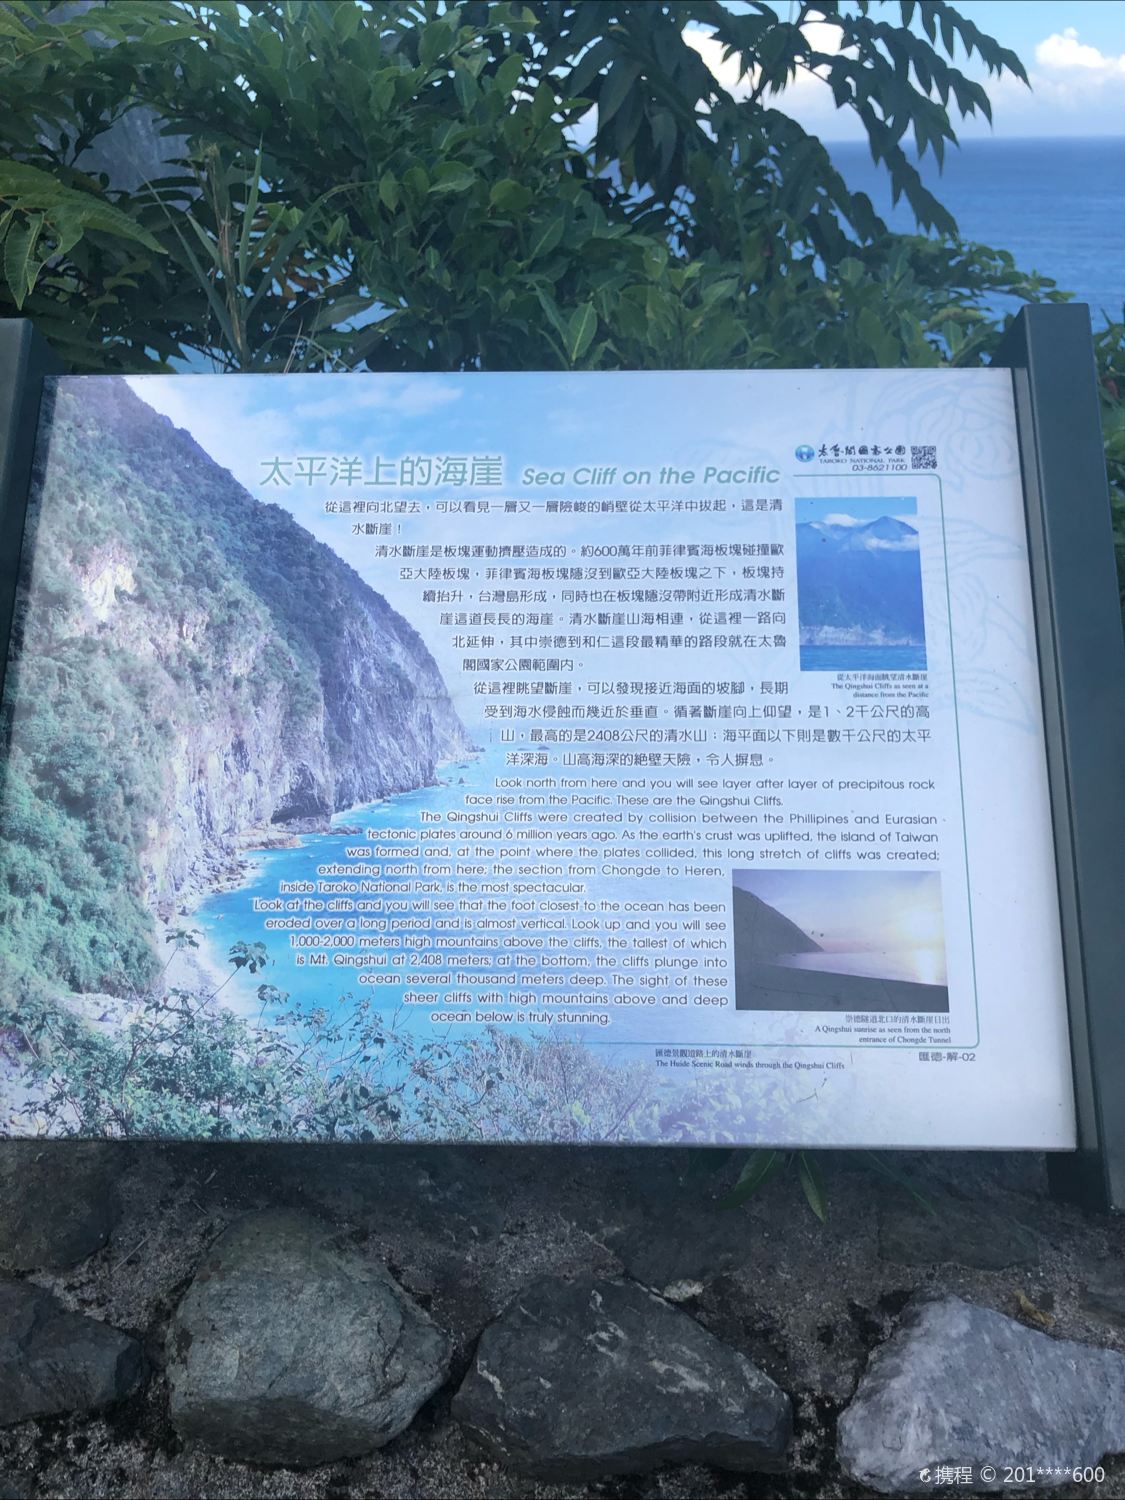 宝岛的清水断崖，真的非常壮观，还想再去一次。 #旅行幸福时刻